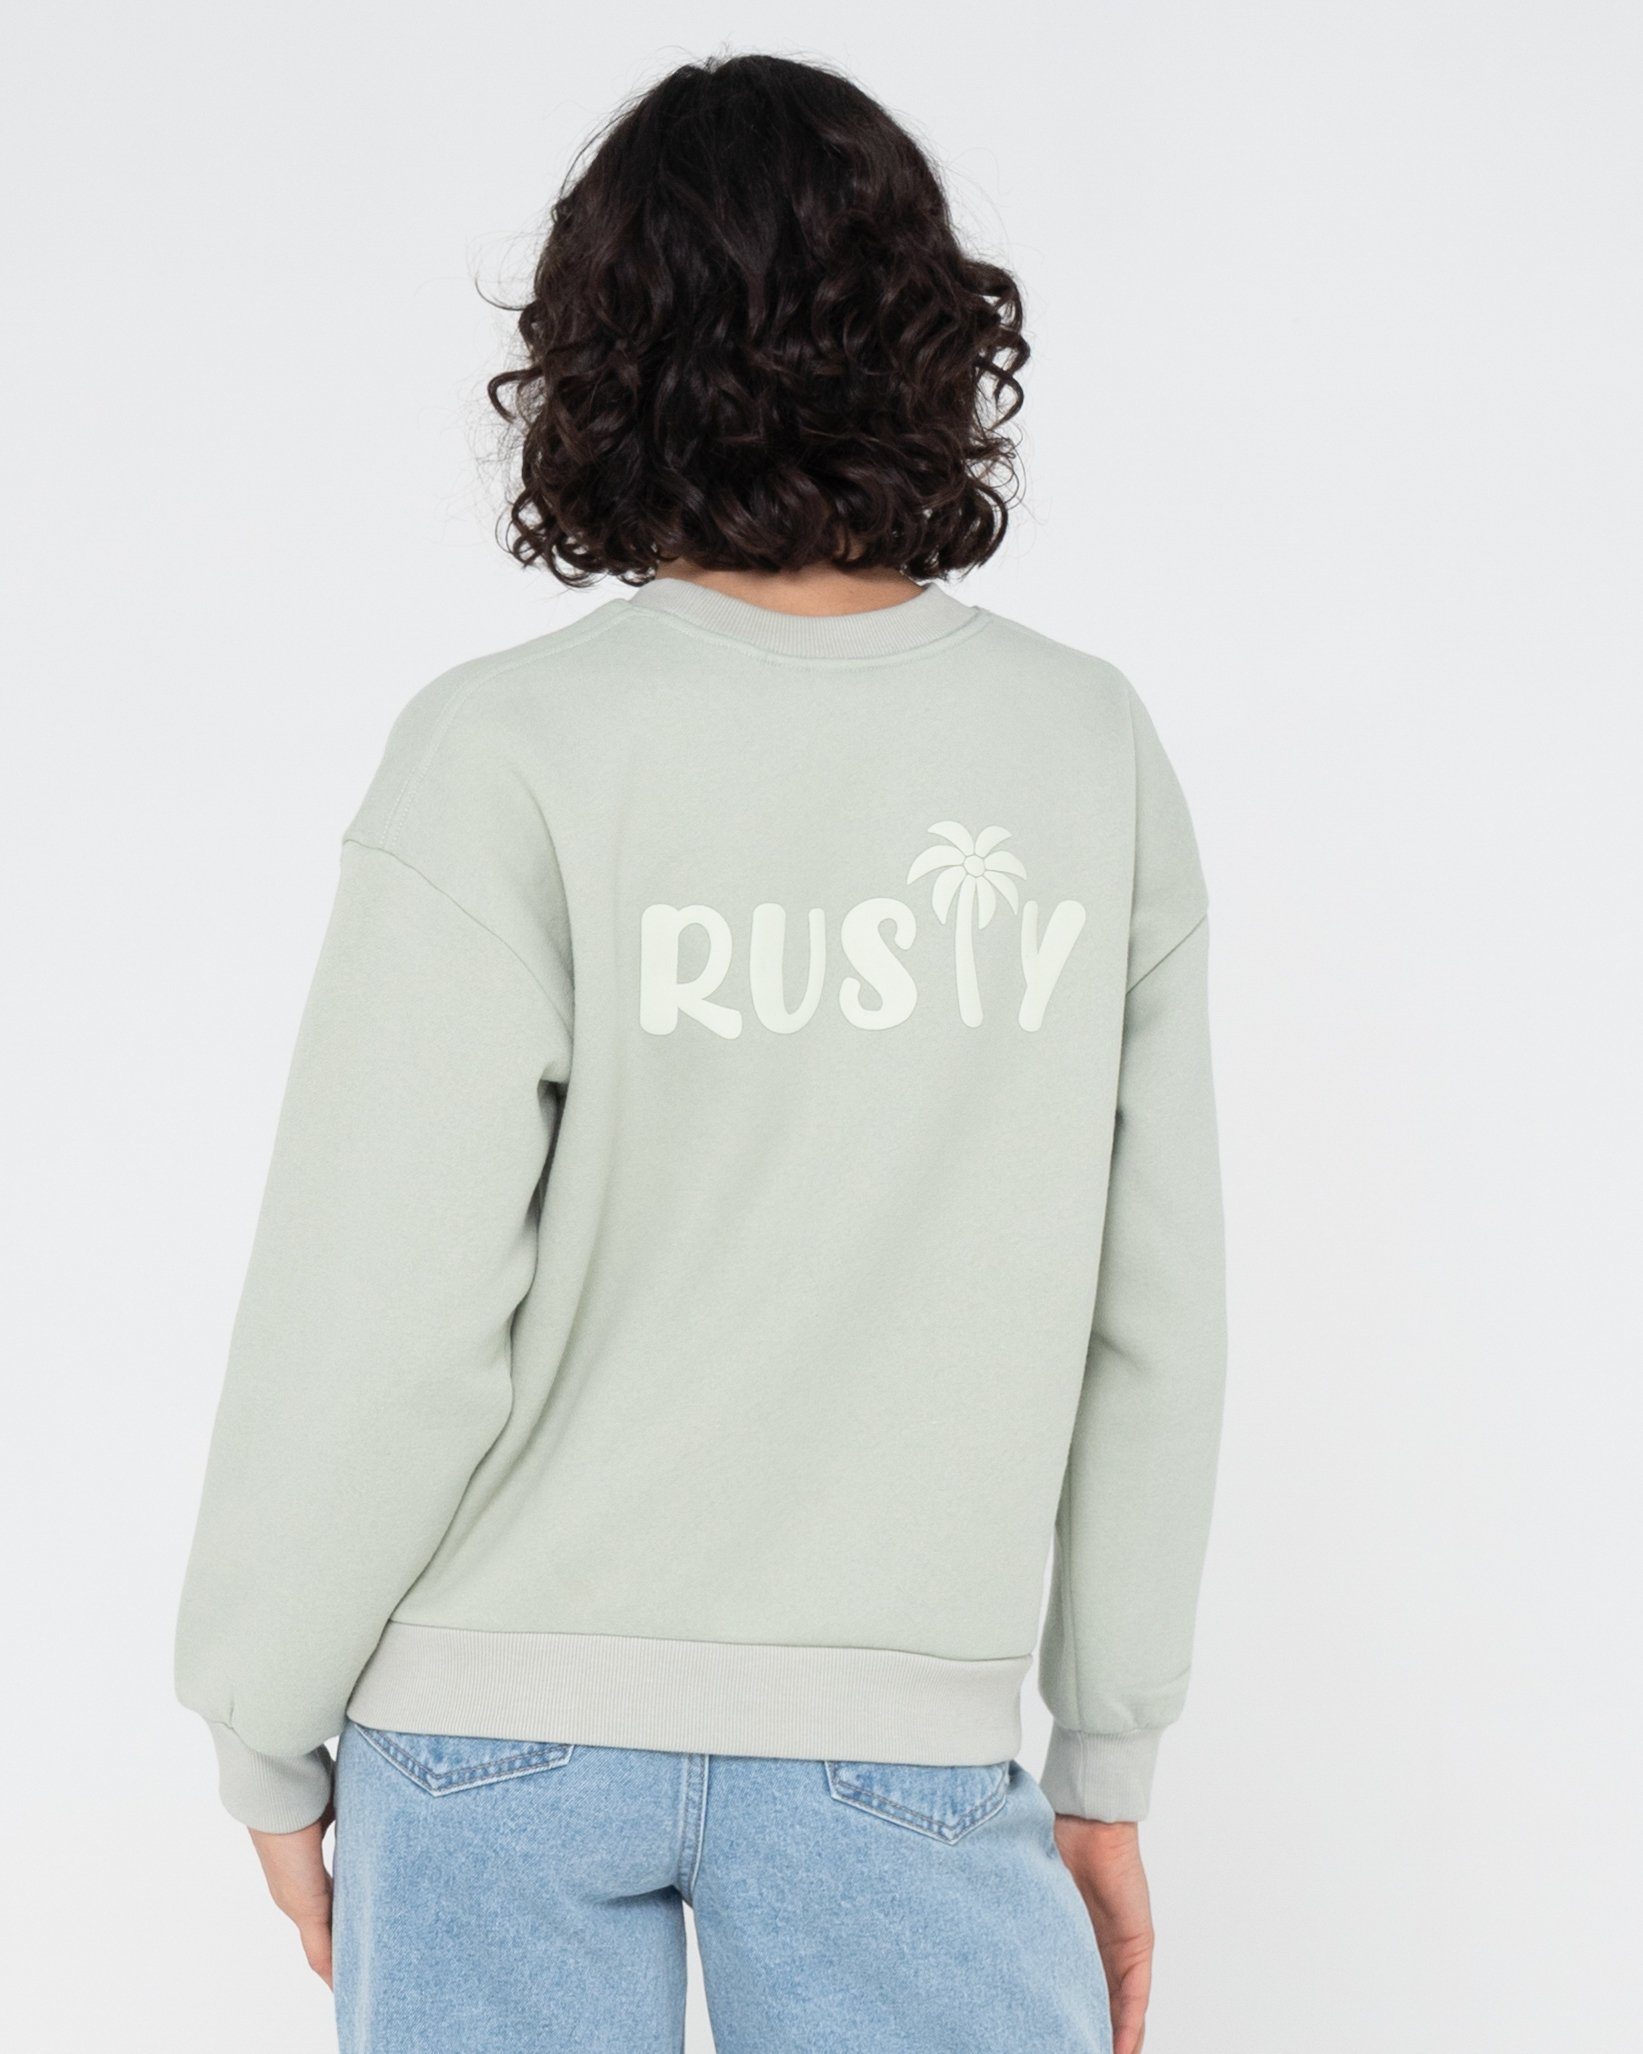 Rusty RELAXED PALM RUSTY Sweatshirt CREW FLEECE